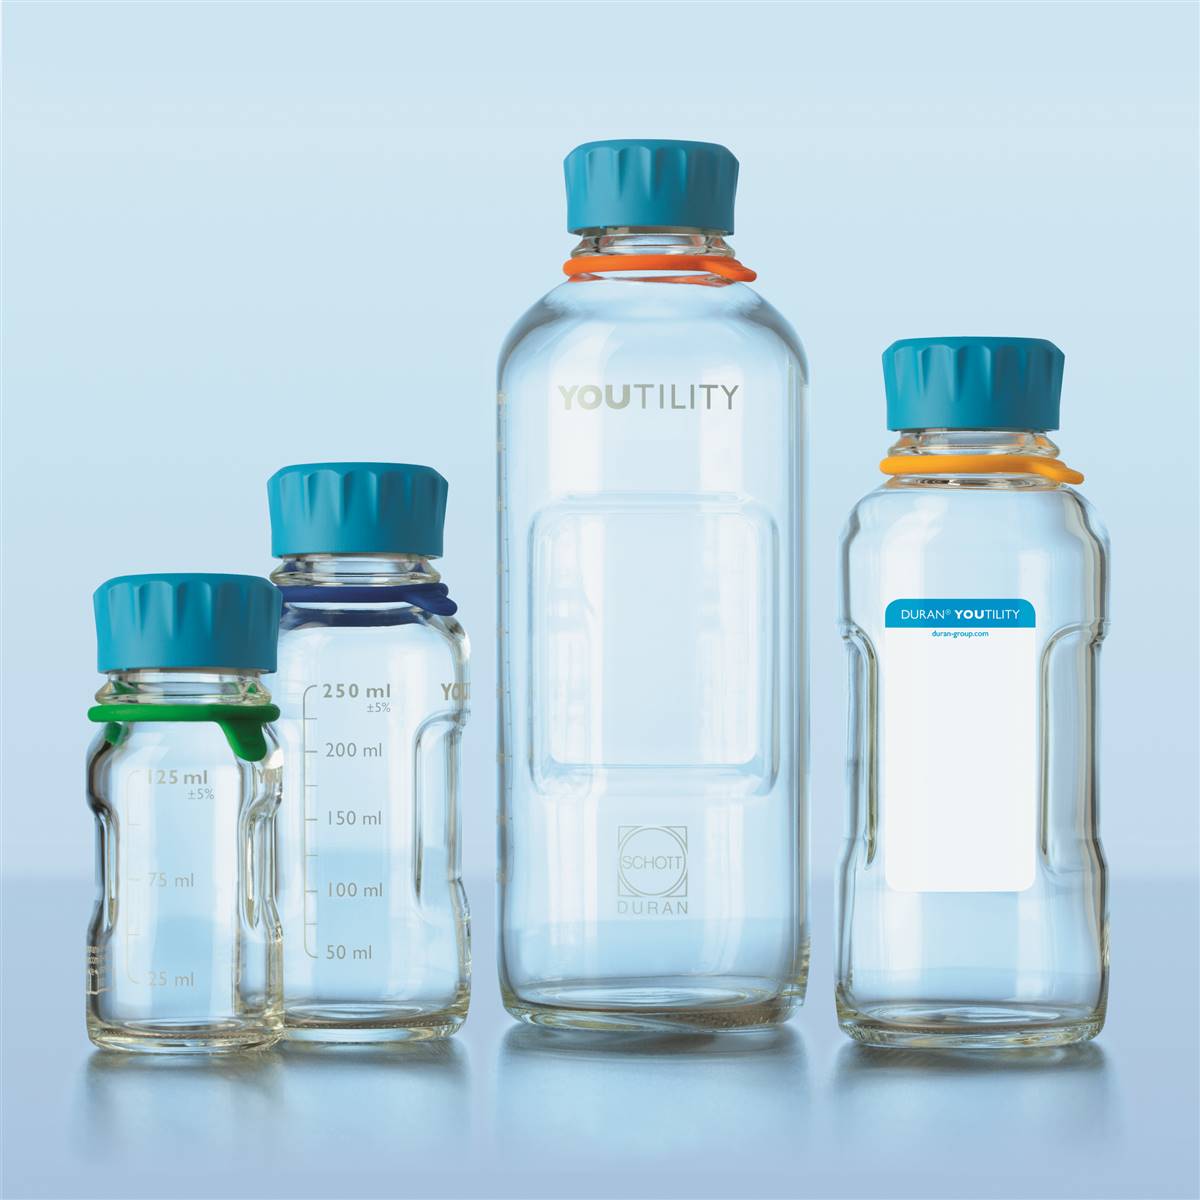 DURAN® Youtility Reagent / Storage Bottle - 250ml